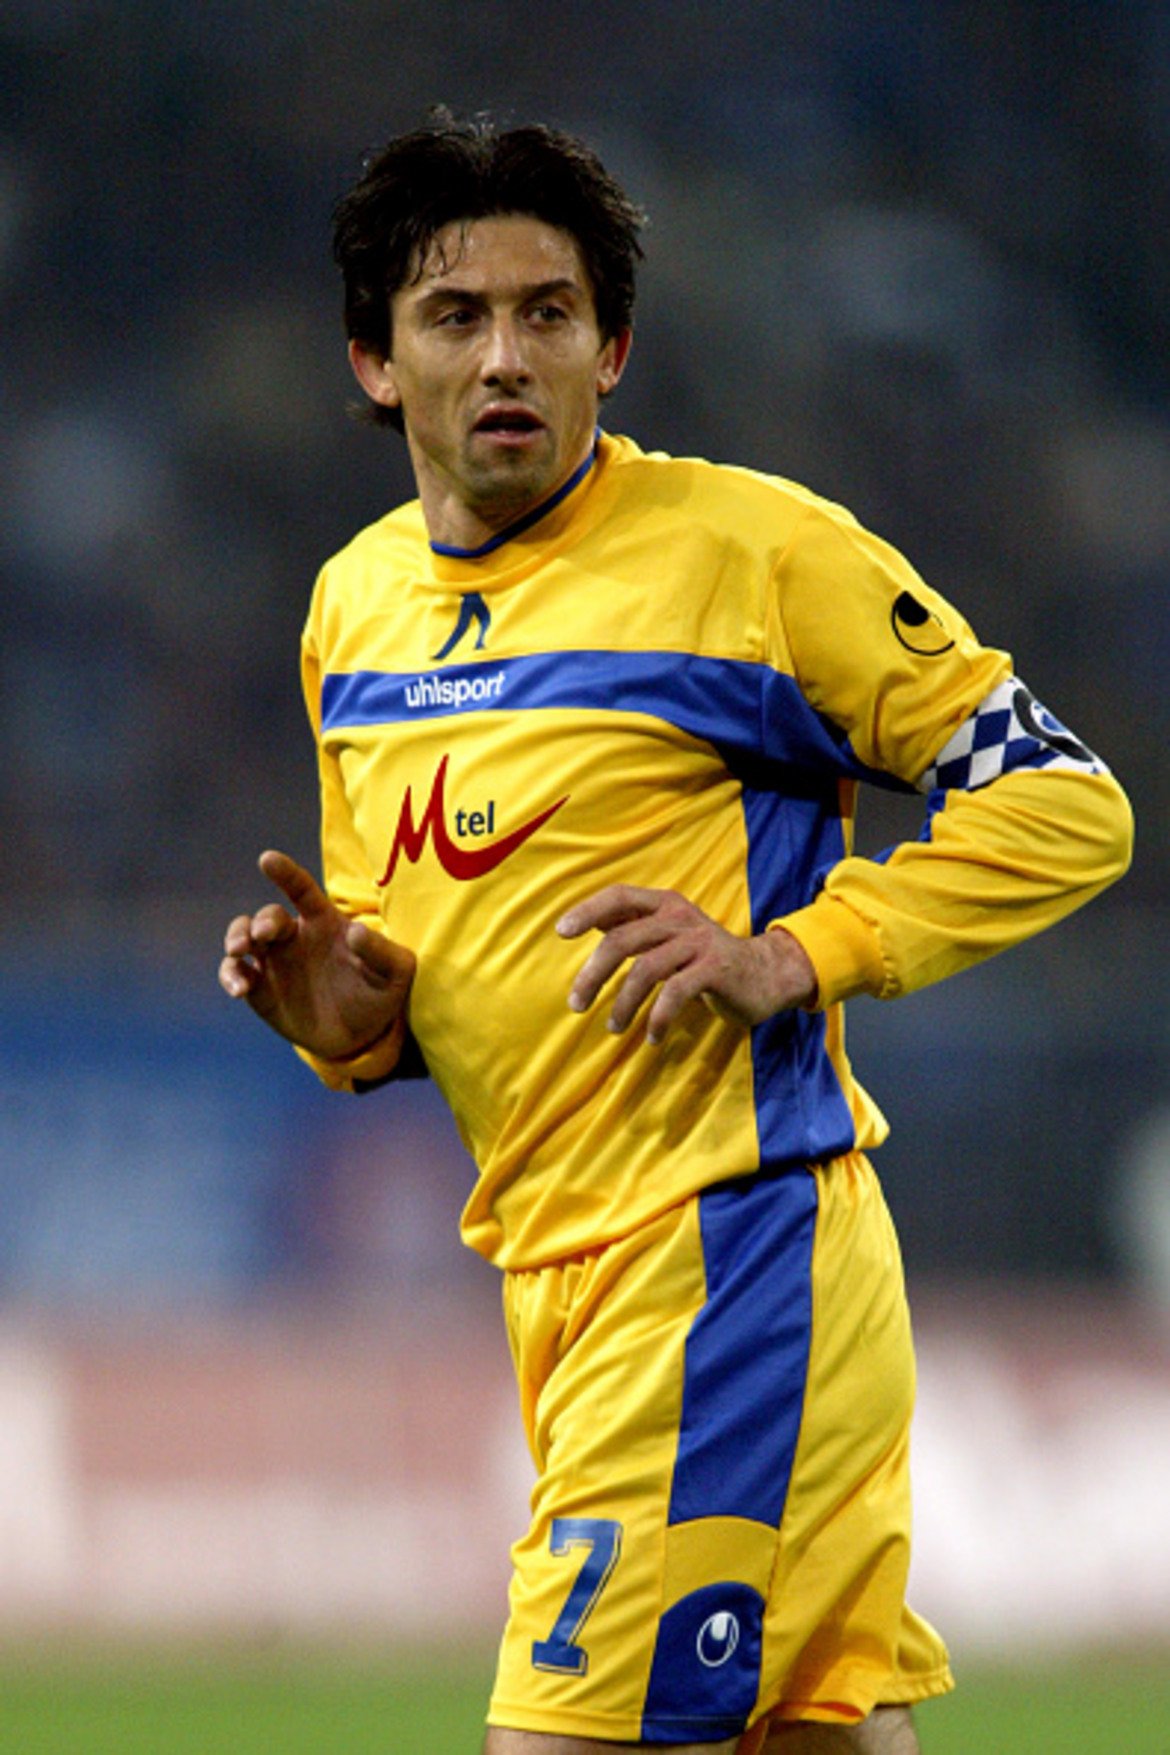 Централен полузащитник: Даниел Боримиров
Кариерата на Боримиров бе обвързана с два клуба, в чиято легенда се превърна – Левски и Мюнхен 1860. Последният герой от лятото на 1994-а се завърна при „сините“ през 2004-а, за да участва в написването на най-славните страници в модерната история на клуба. След като прекрати кариерата си през 2008-а, Боримиров се захвана с различни ръководни функции в Левски. Води и школата на клуба, а сега е спортен директор на "сините", но ще трябва да почака поне година, за да стане част от нов поход в евротурнирите.